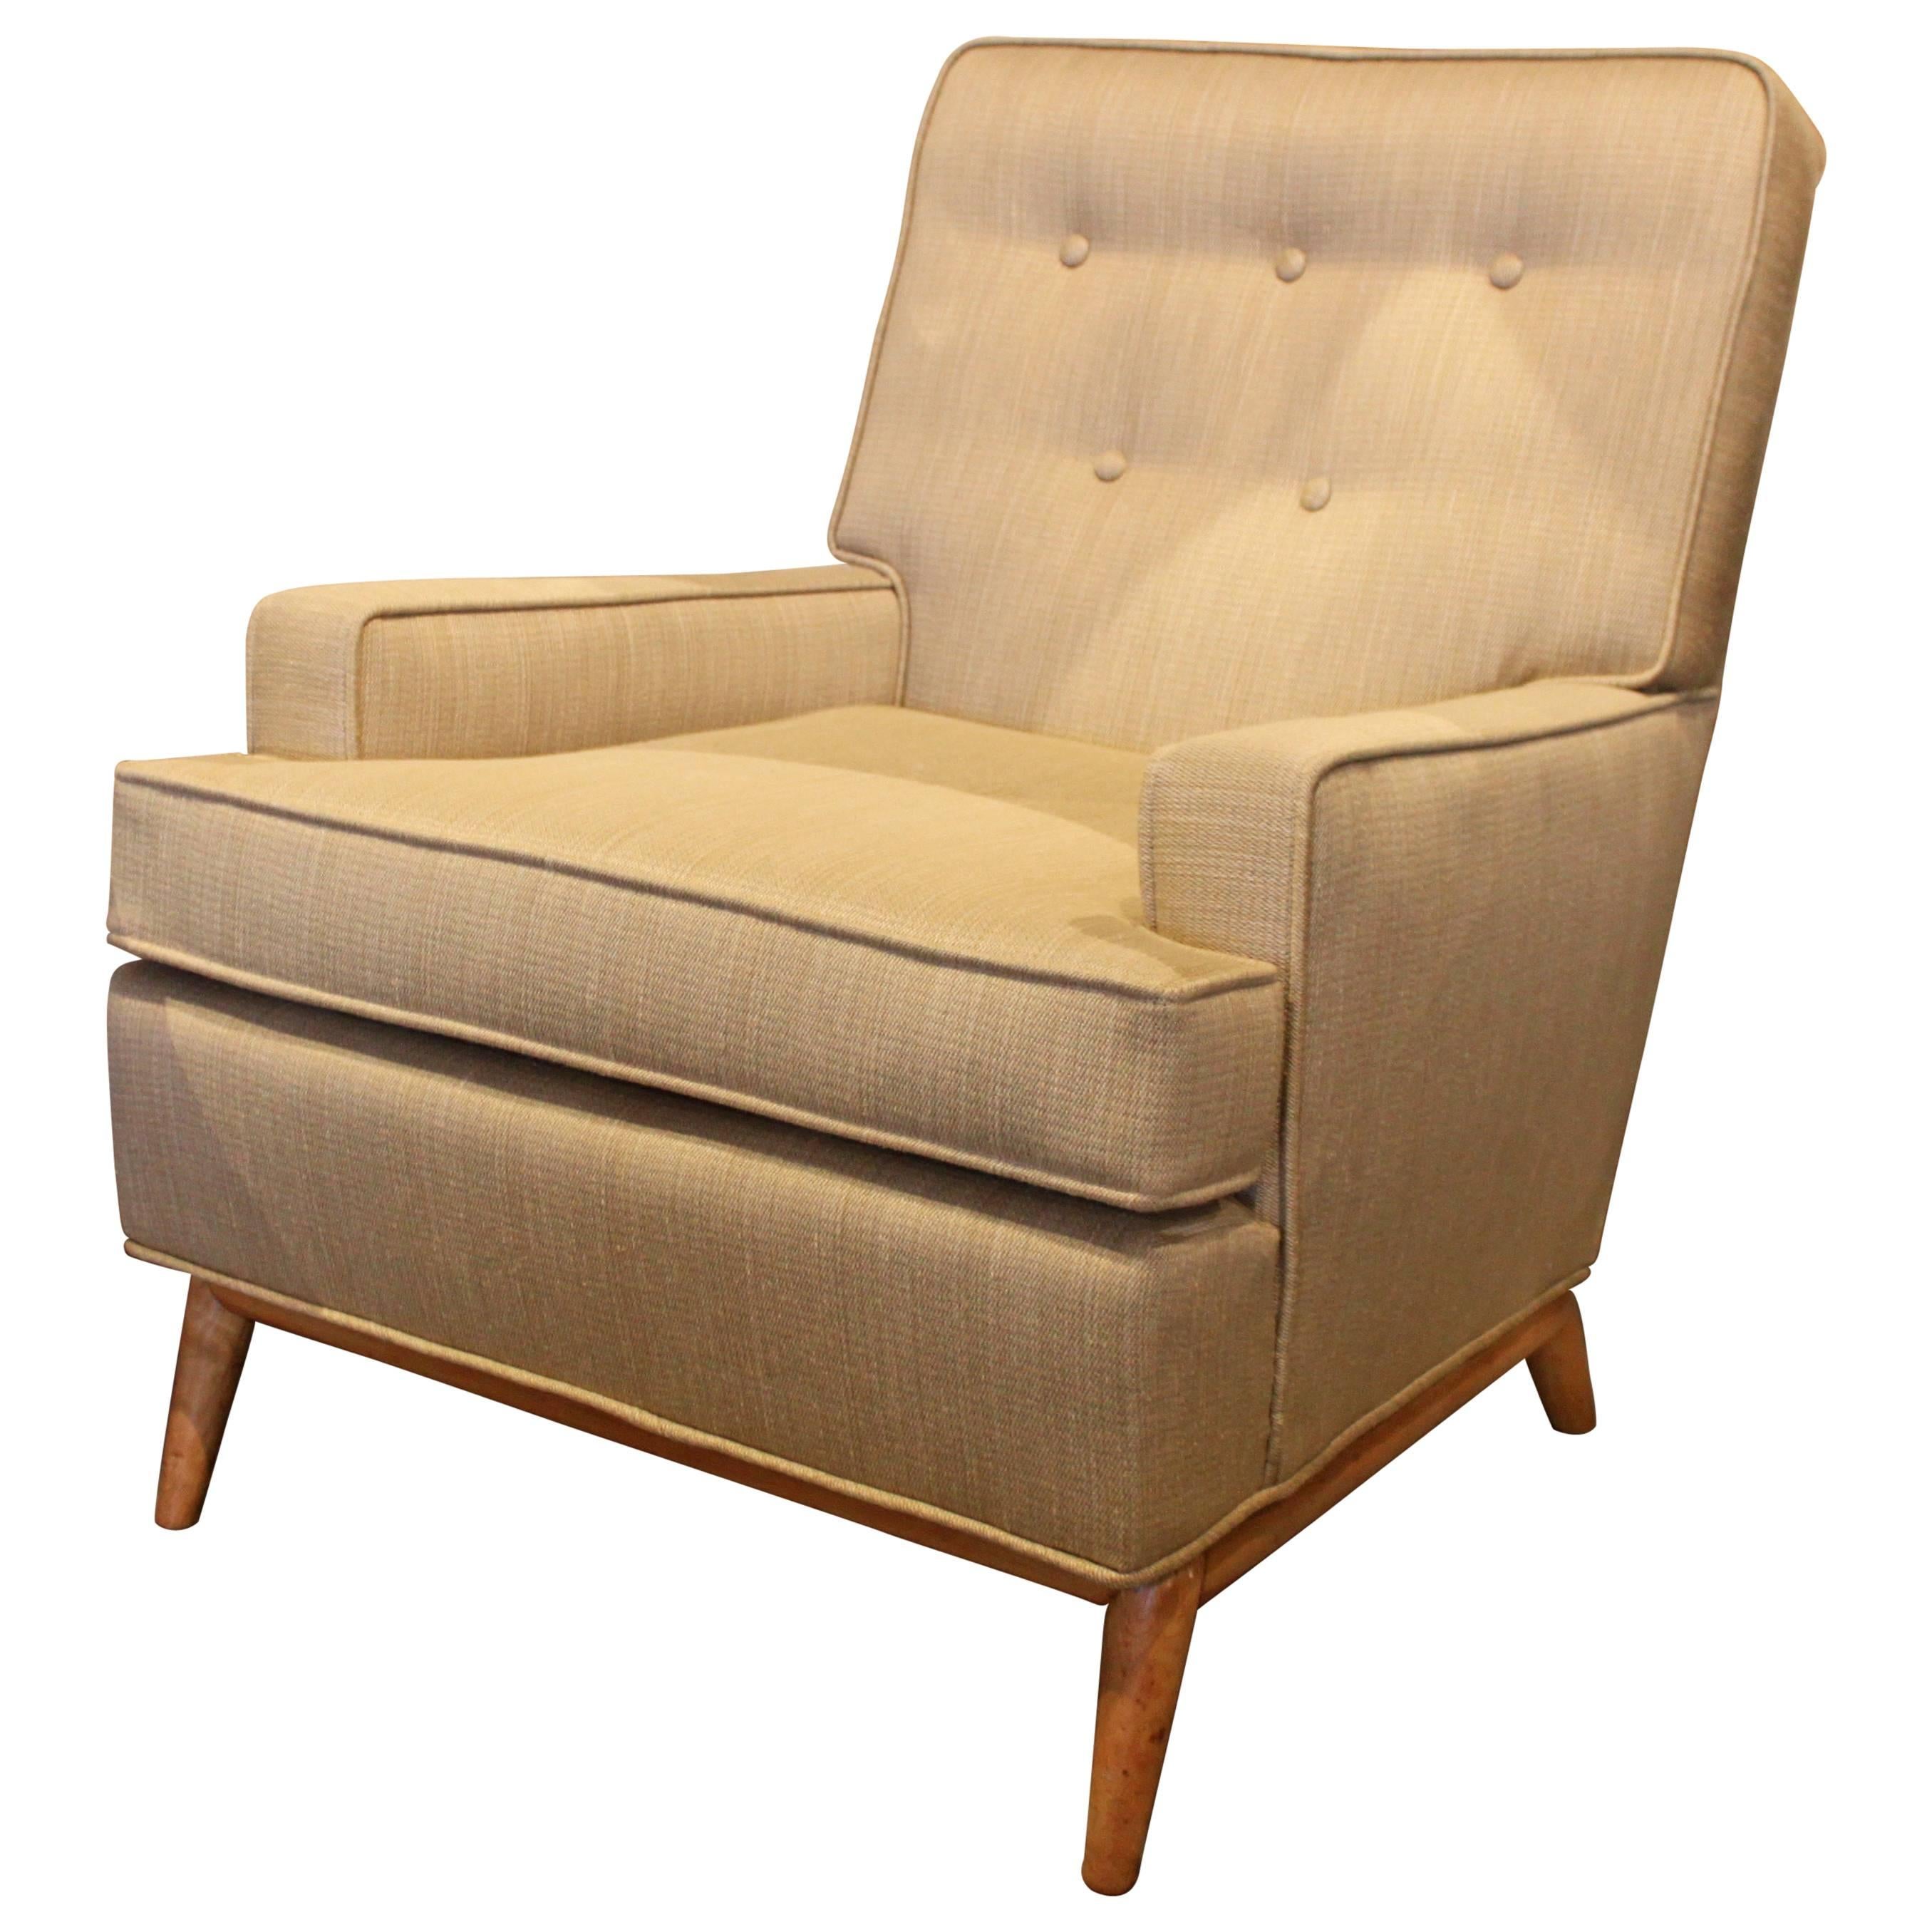 Robsjohn-Gibbings Lounge Chair in New Upholstery